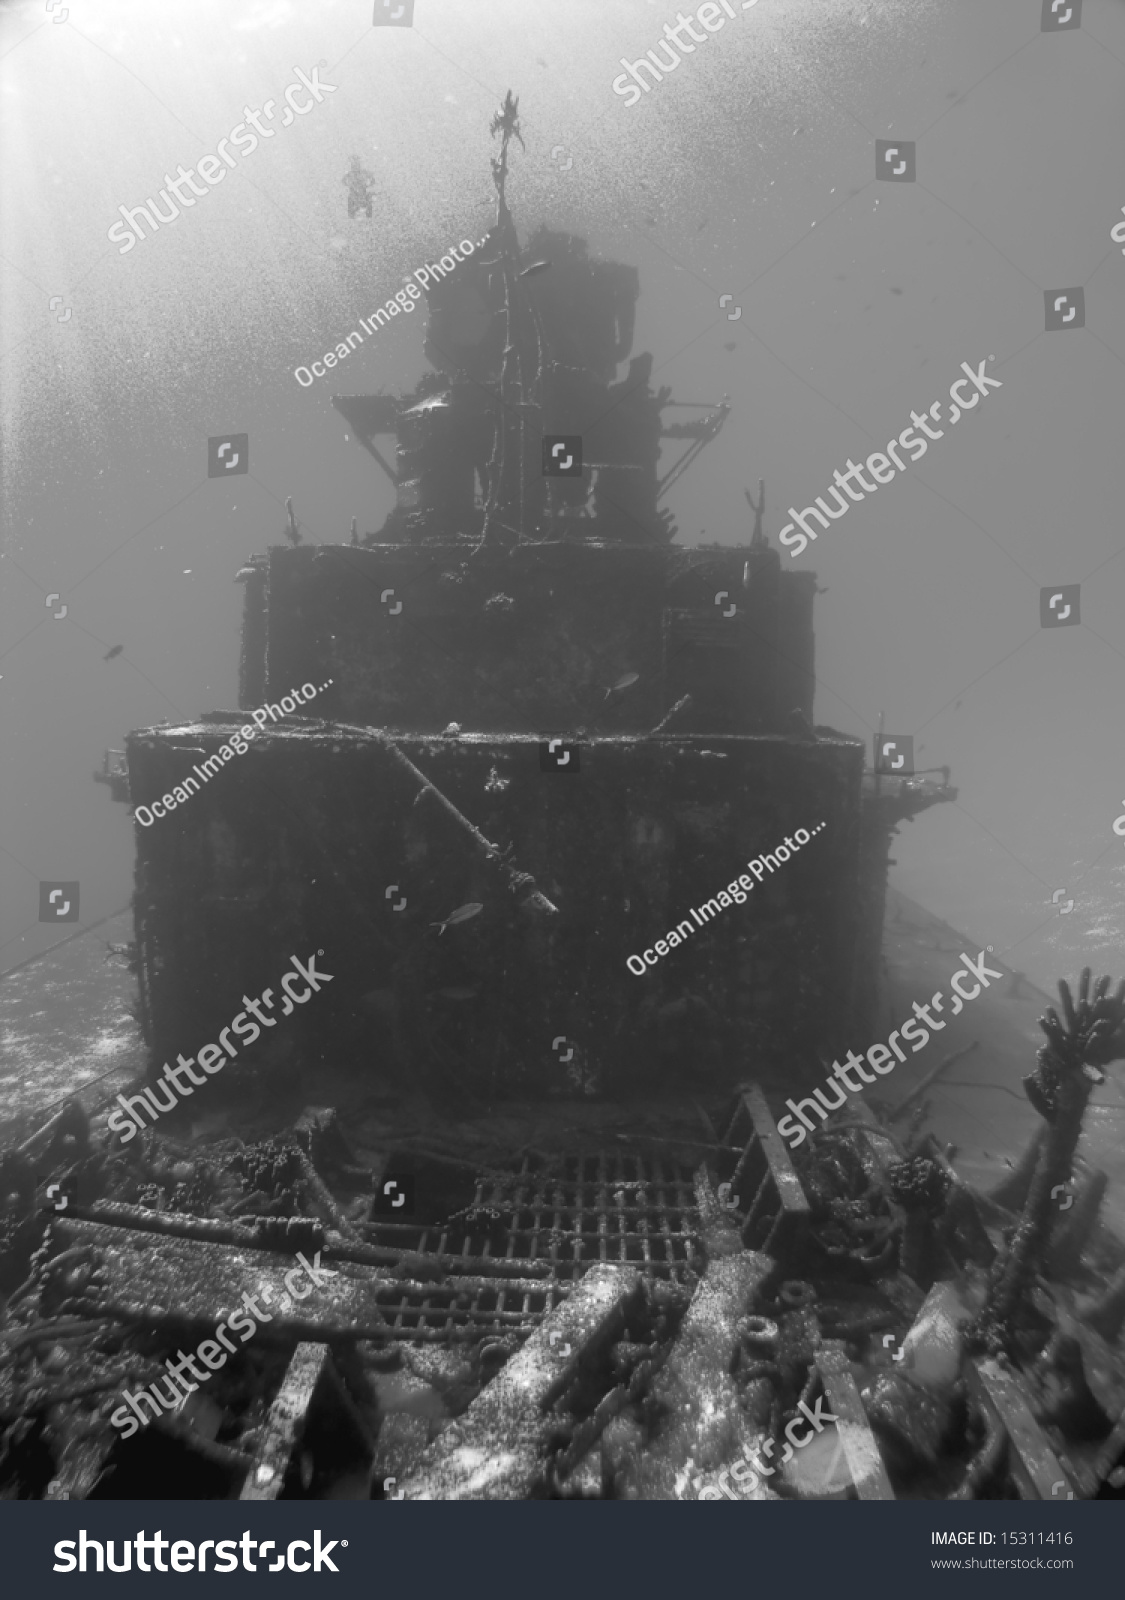 Scuba Diver Descends On A Sunken Ship In Black And White Stock Photo ...